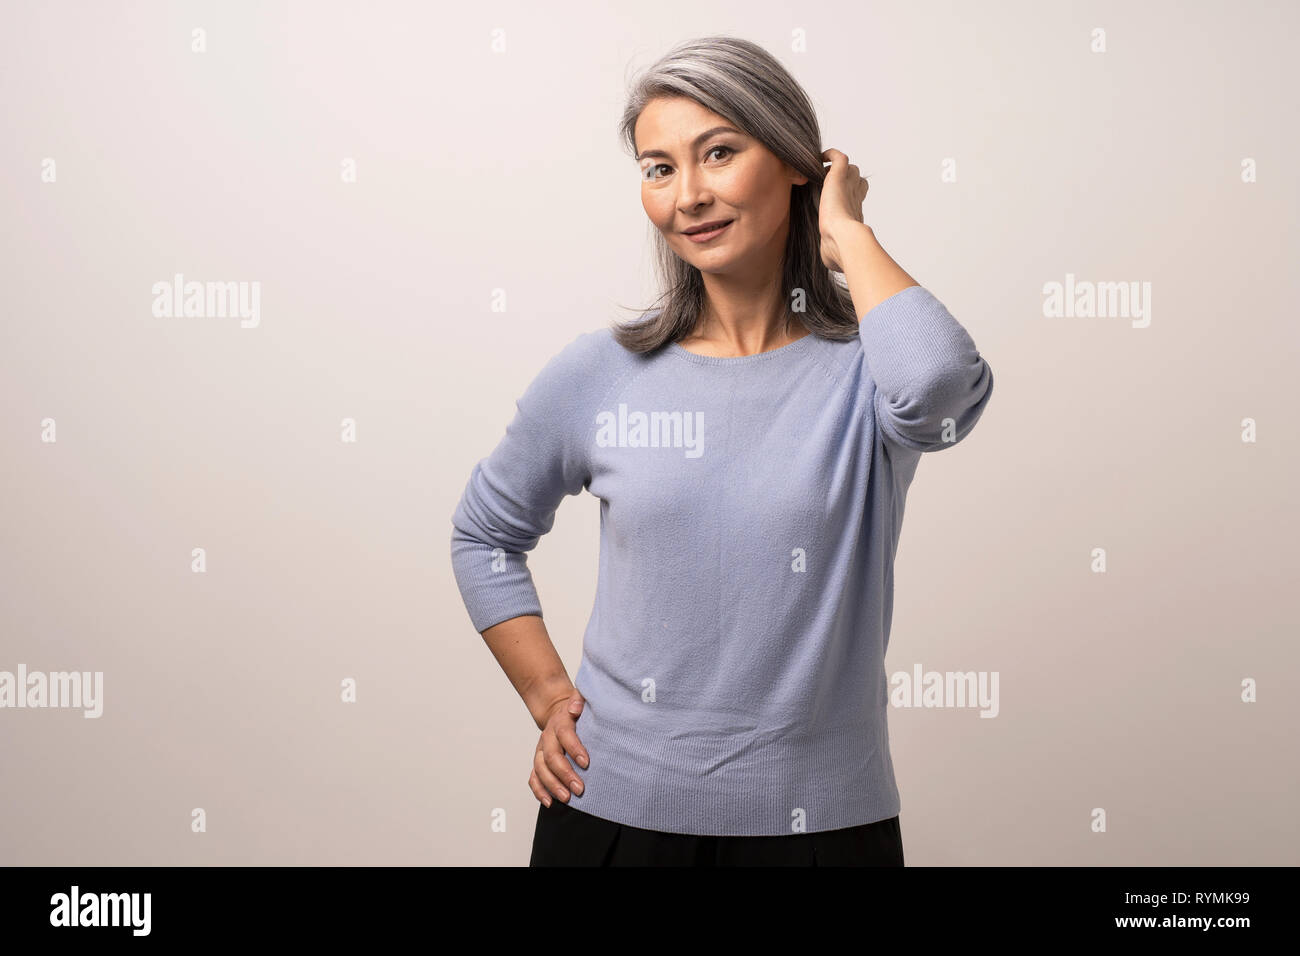 Lächelnd asiatische Frau berührt ihr graues Haar Stockfoto